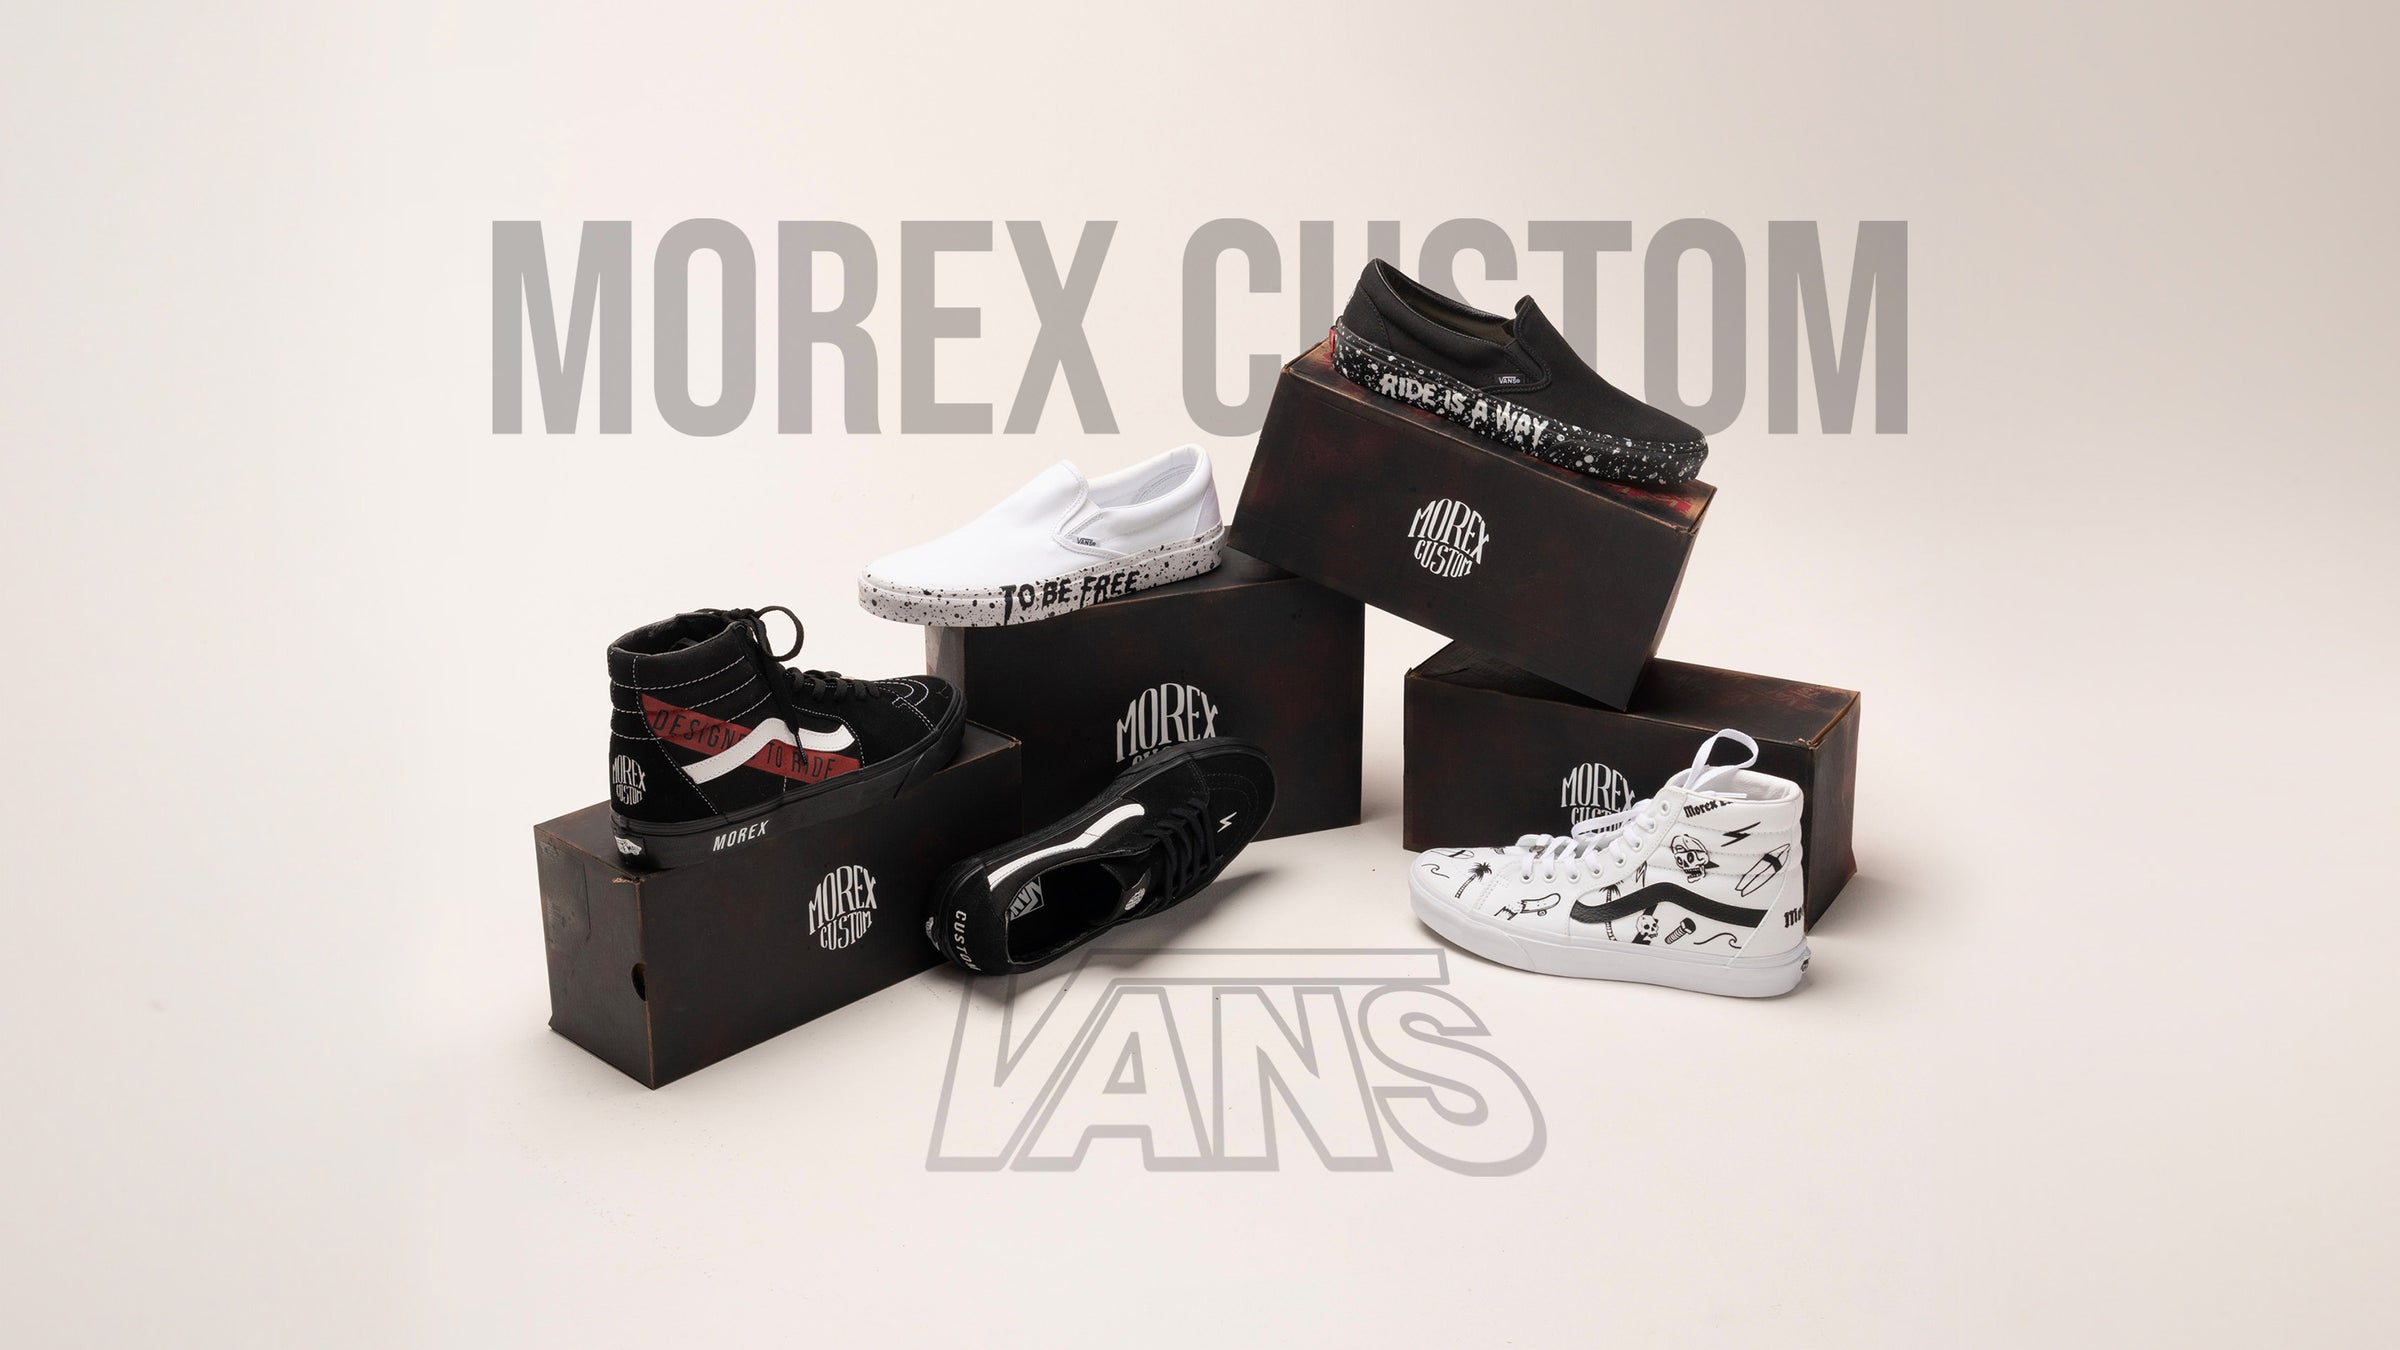 Vans X Morex Custom